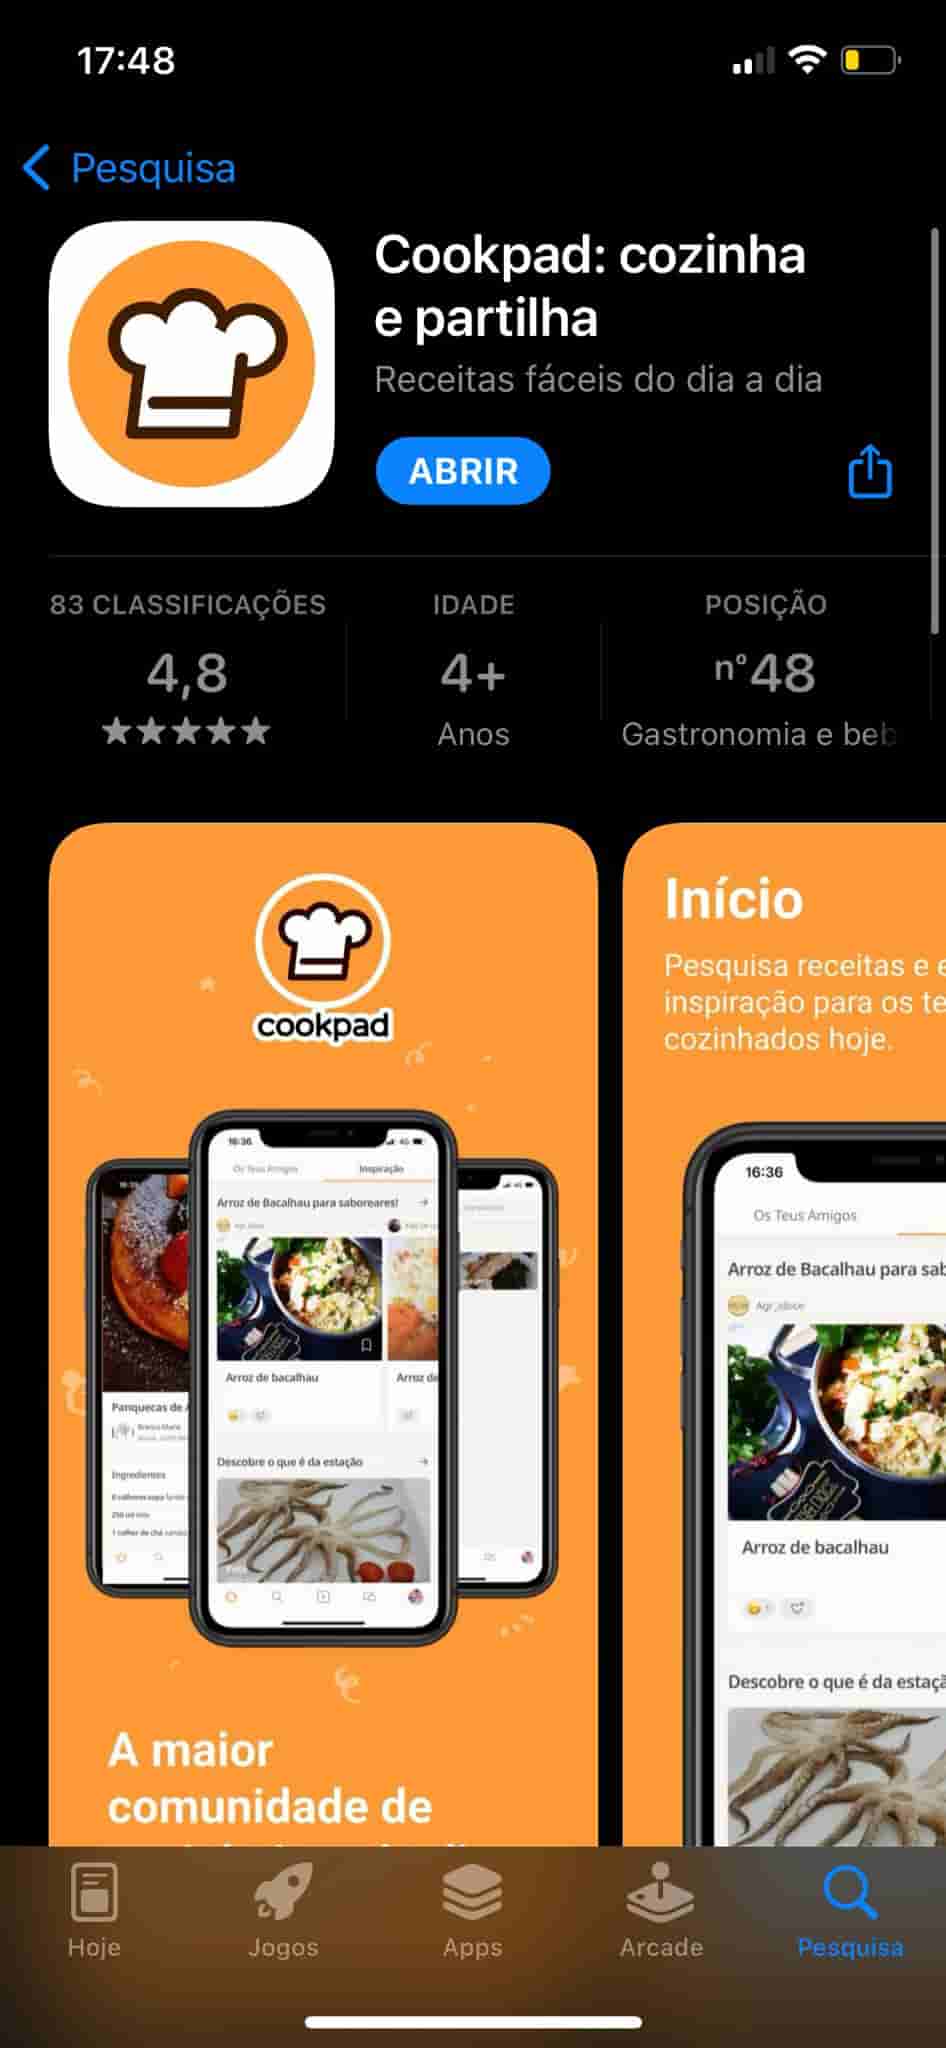 Cookpad, app para receitas caseiras